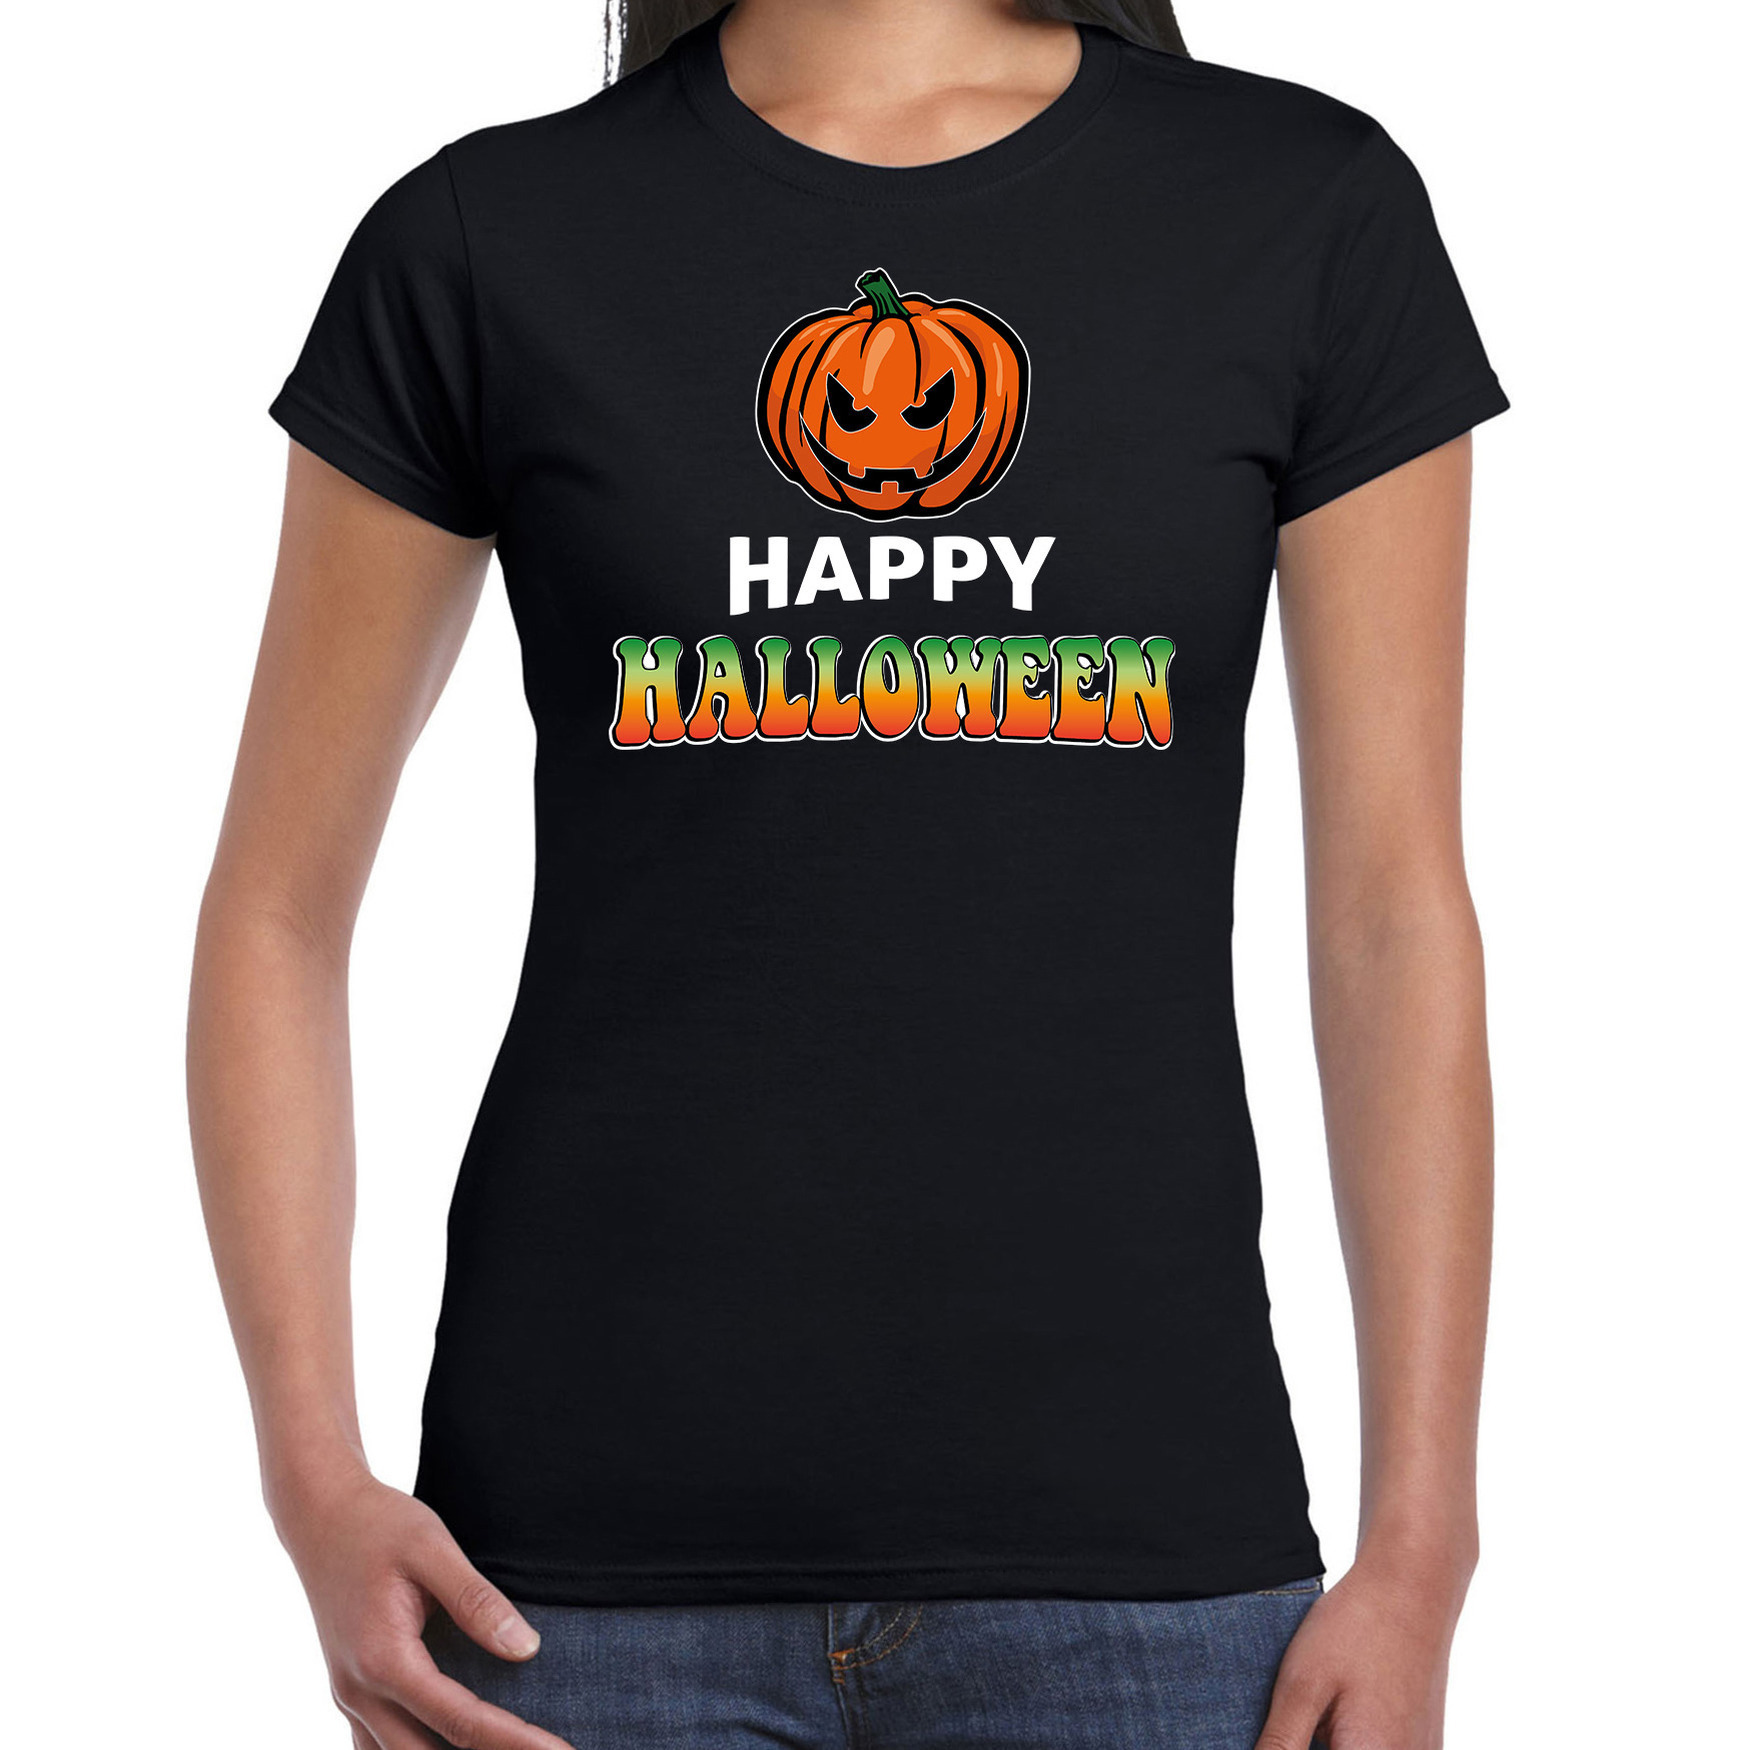 Pompoen / happy halloween verkleed t-shirt zwart voor dames